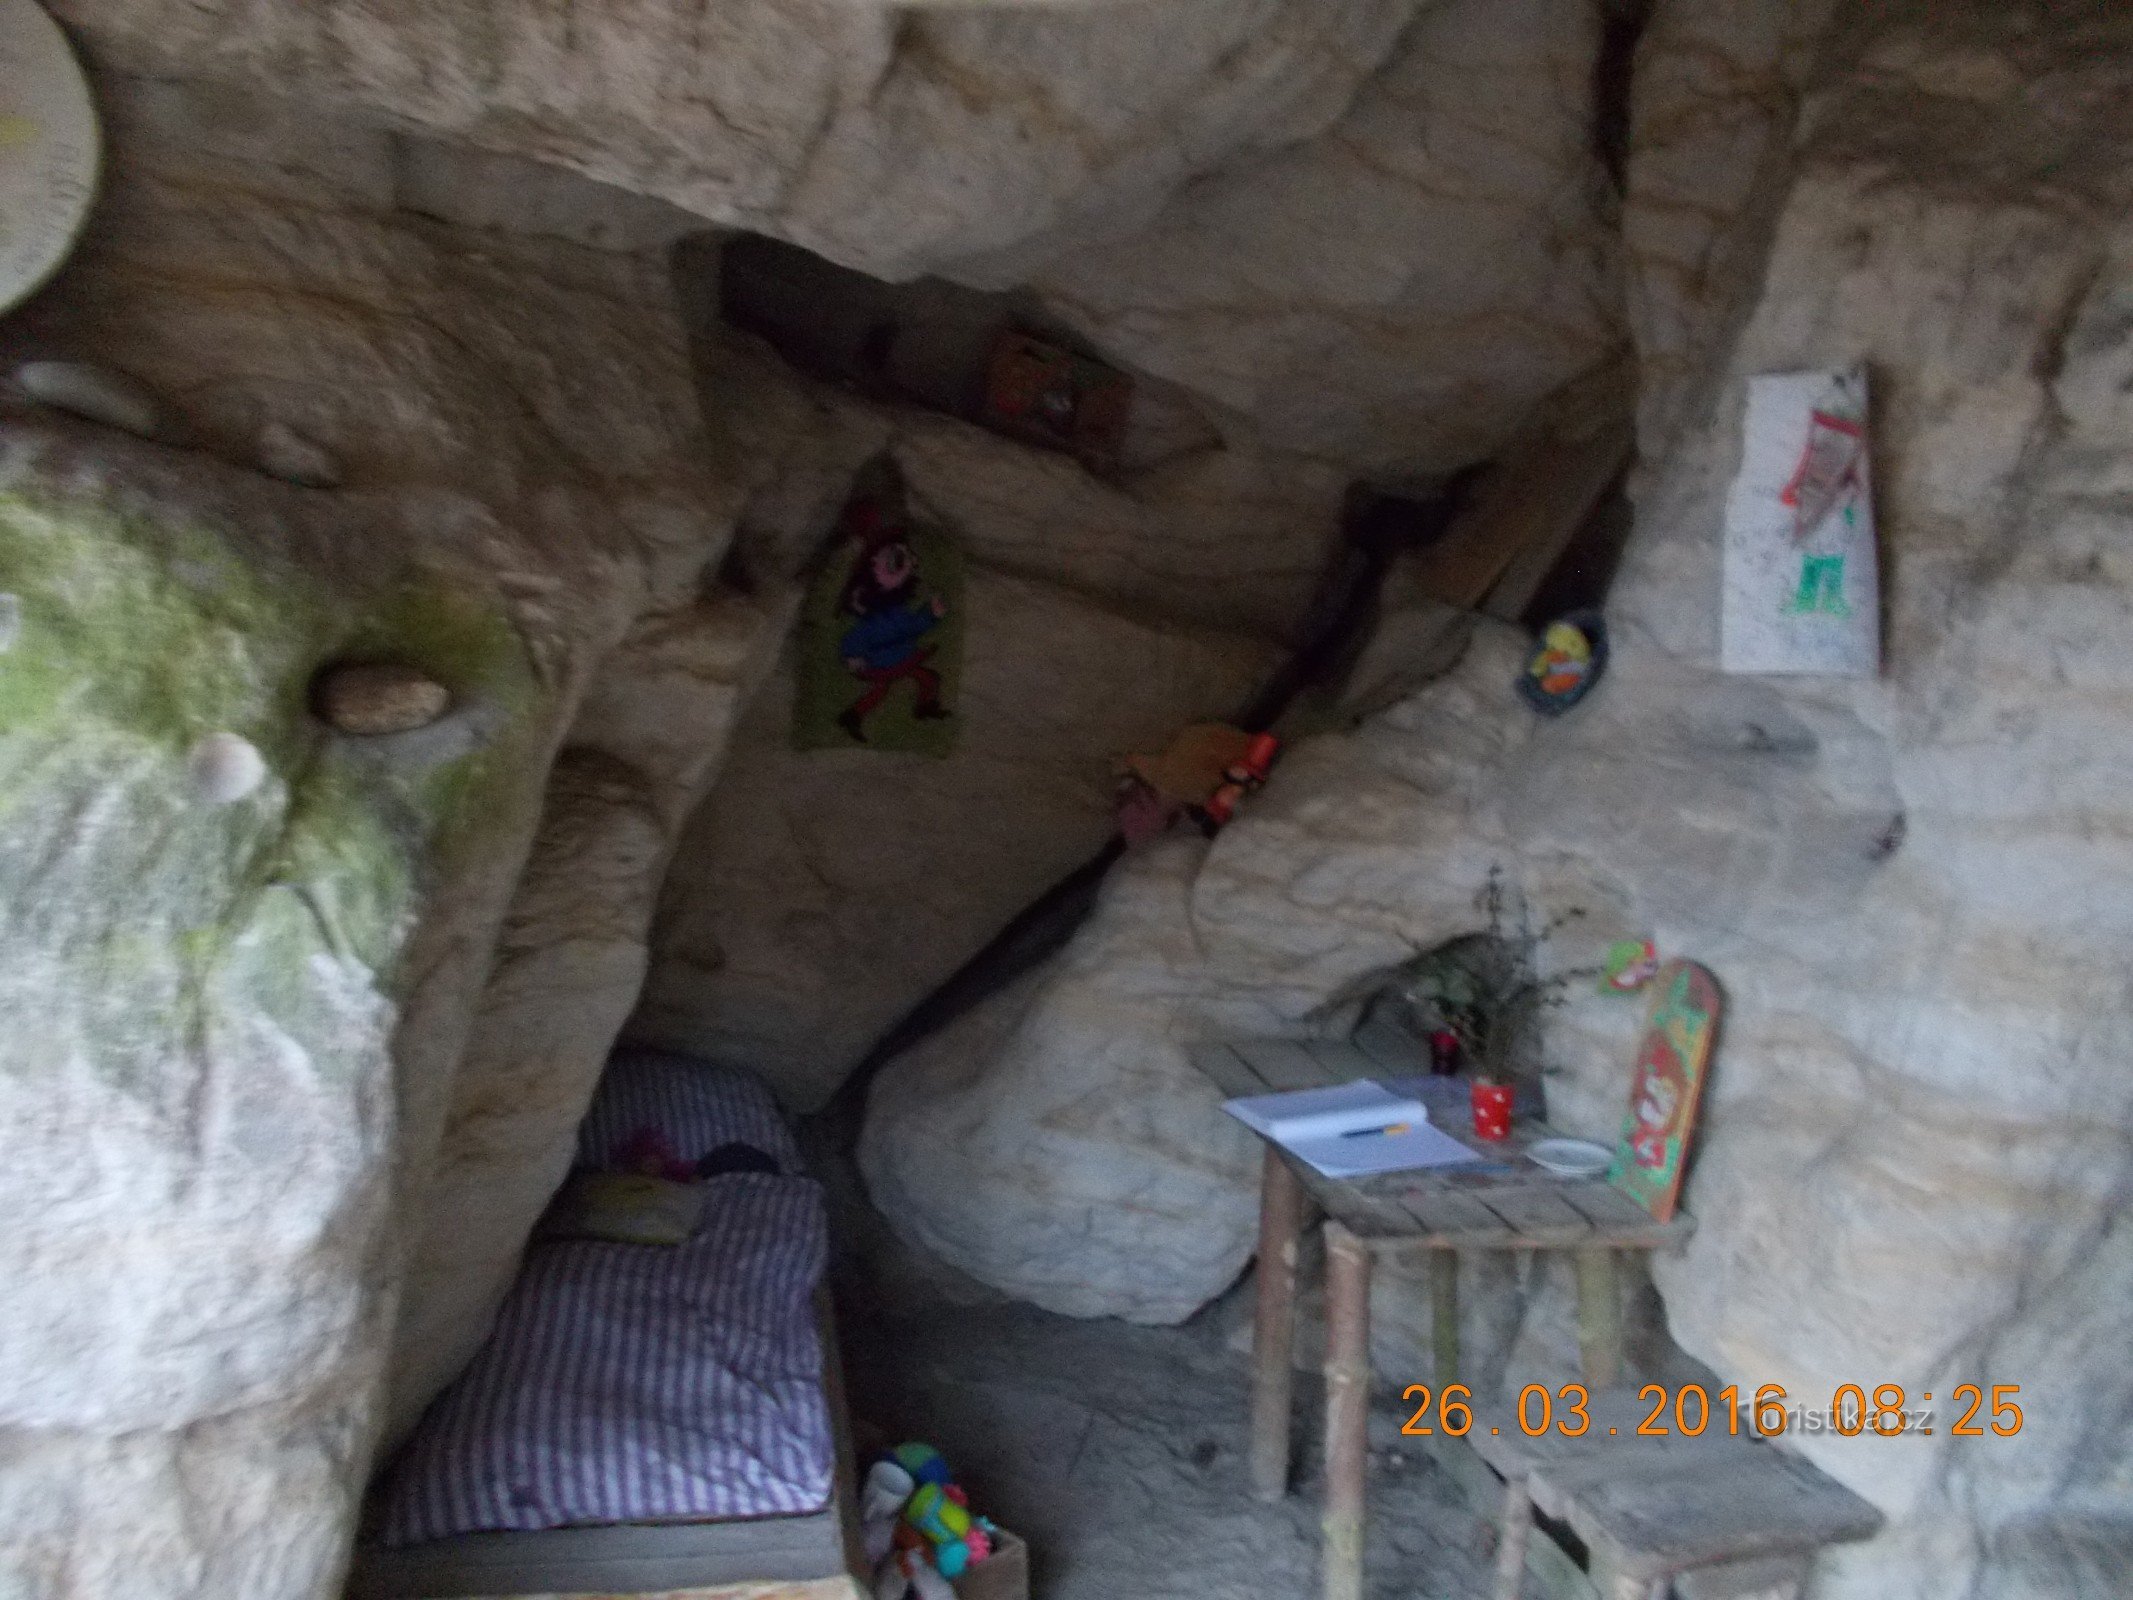 鲁姆卡斯洞穴